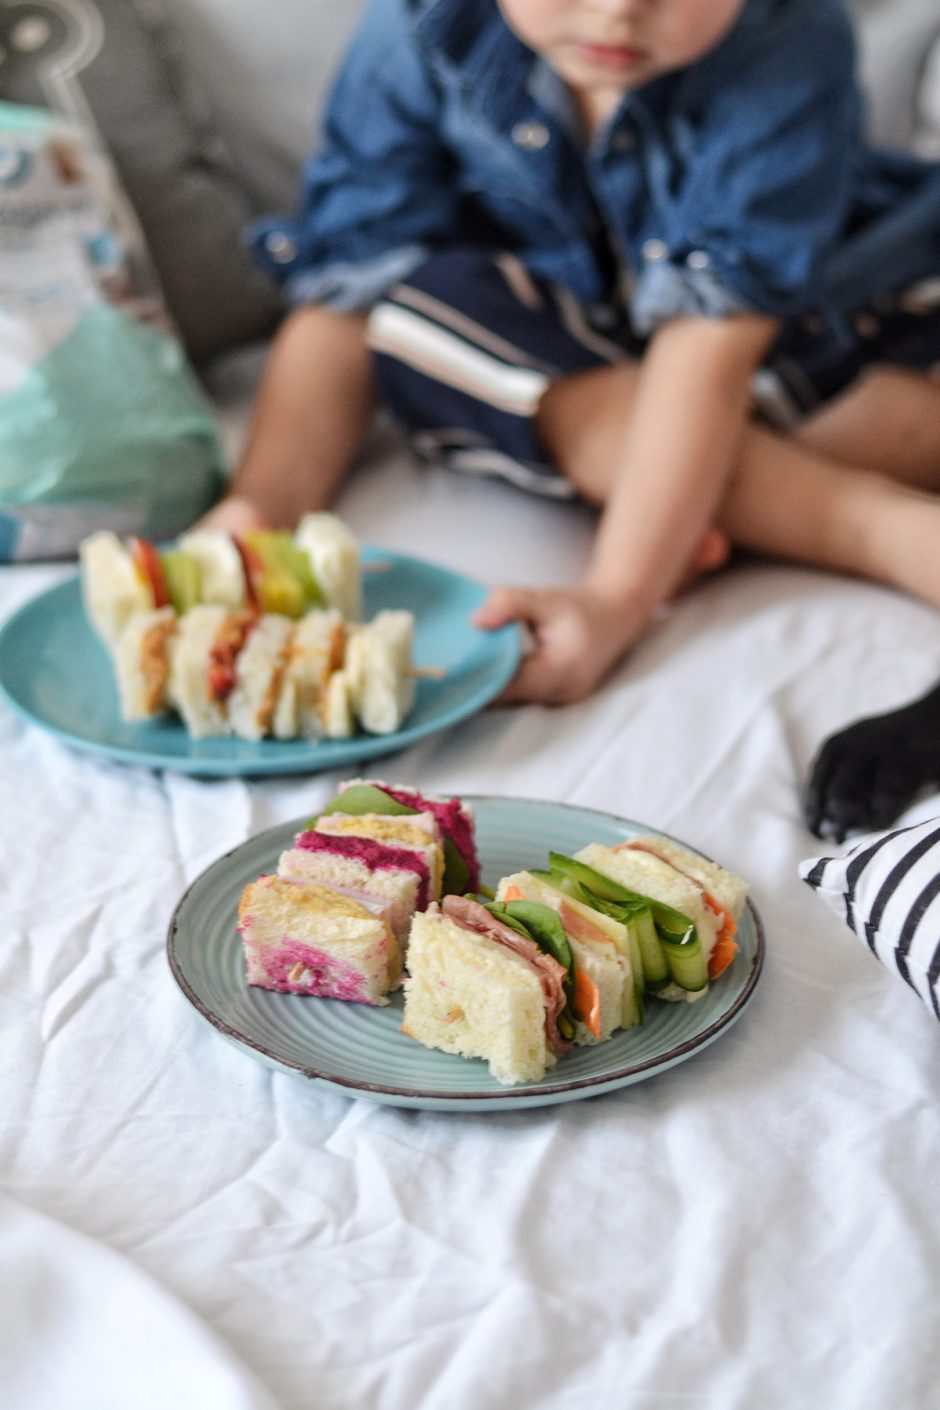 Patiks išrankiausiems: smagios sumuštinių idėjos vaikams (receptai)